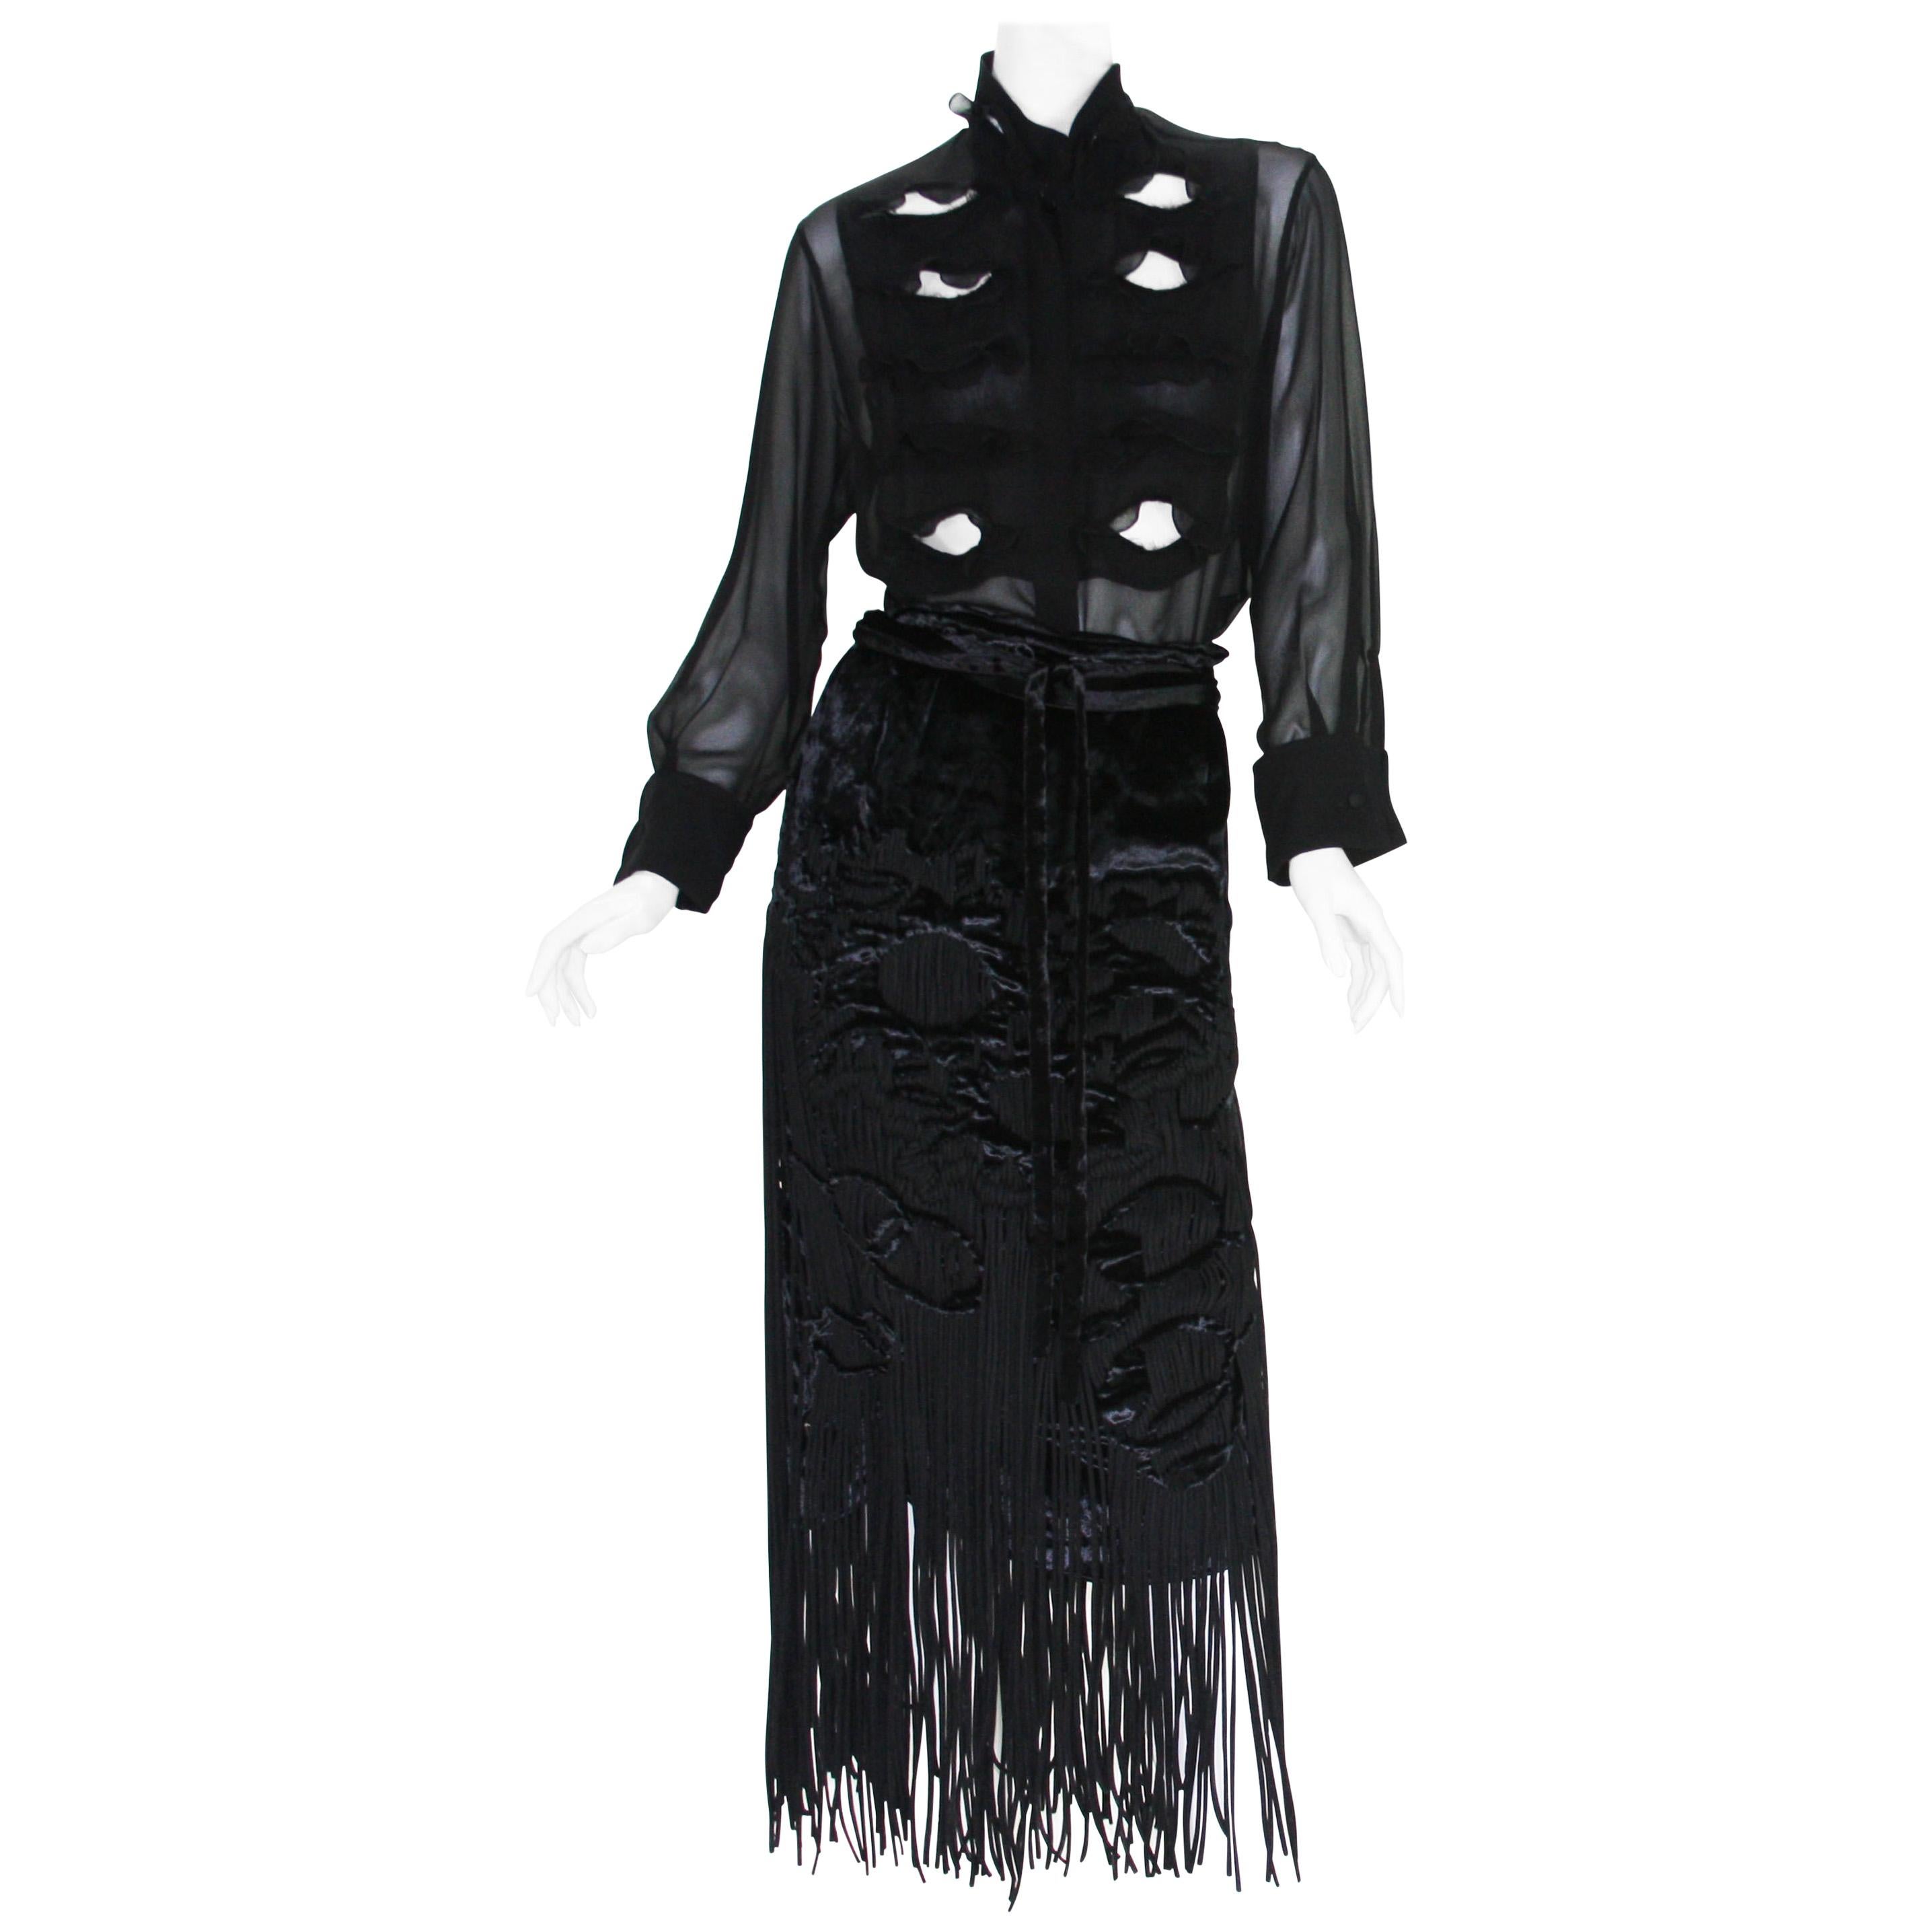 Tom Ford for Yves Saint Laurent 2001-2003 Collection Silk Top Velvet Skirt Suit 